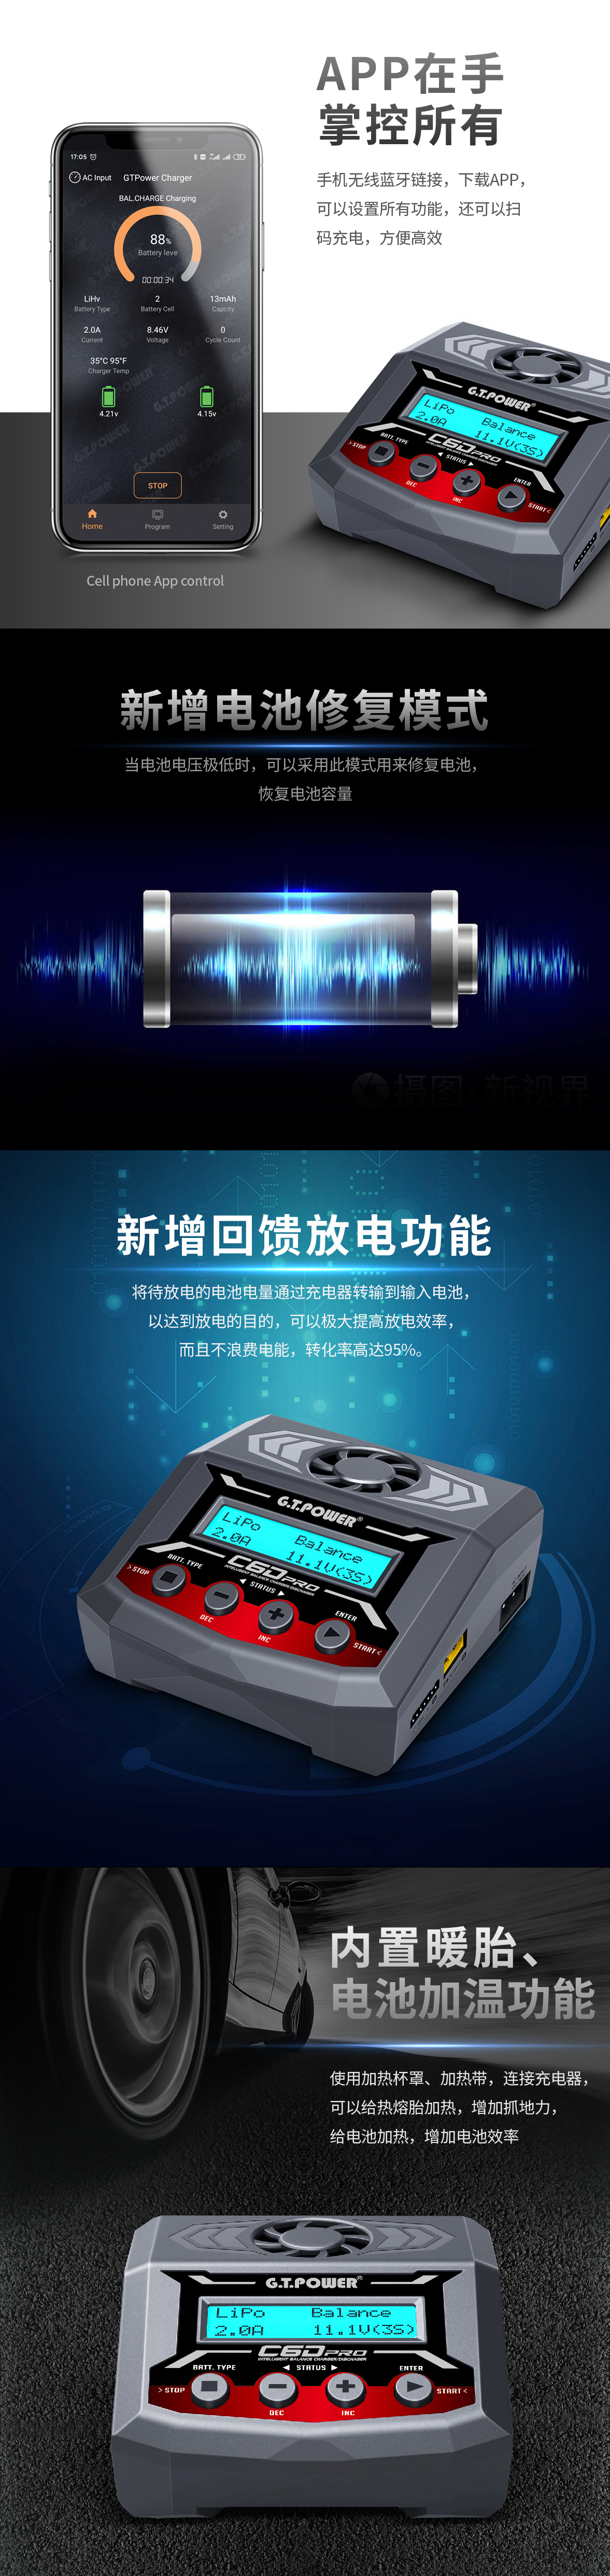 C6DPRO充电器祥情-中文02.jpg